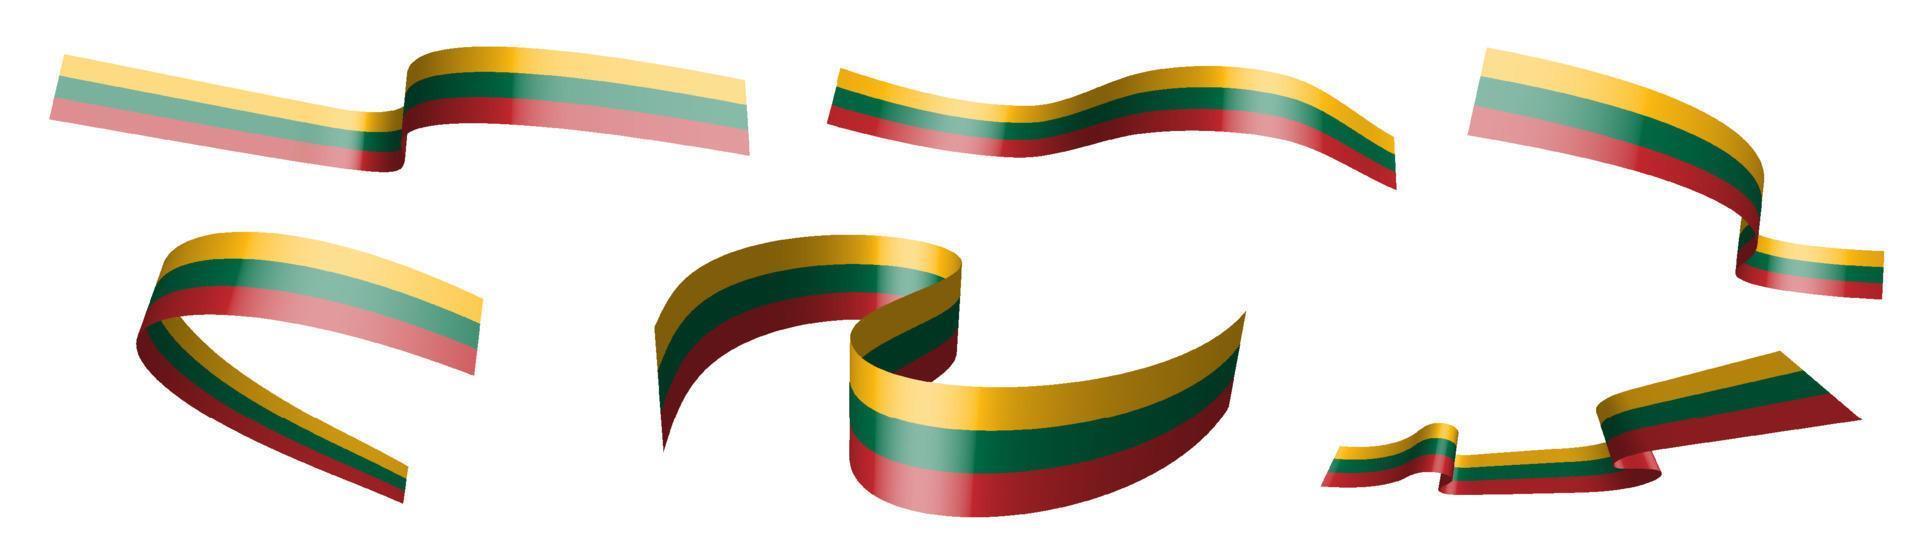 ensemble de rubans de vacances. drapeau de la lituanie agitant au vent. séparation en couches inférieures et supérieures. élément de conception. vecteur sur fond blanc